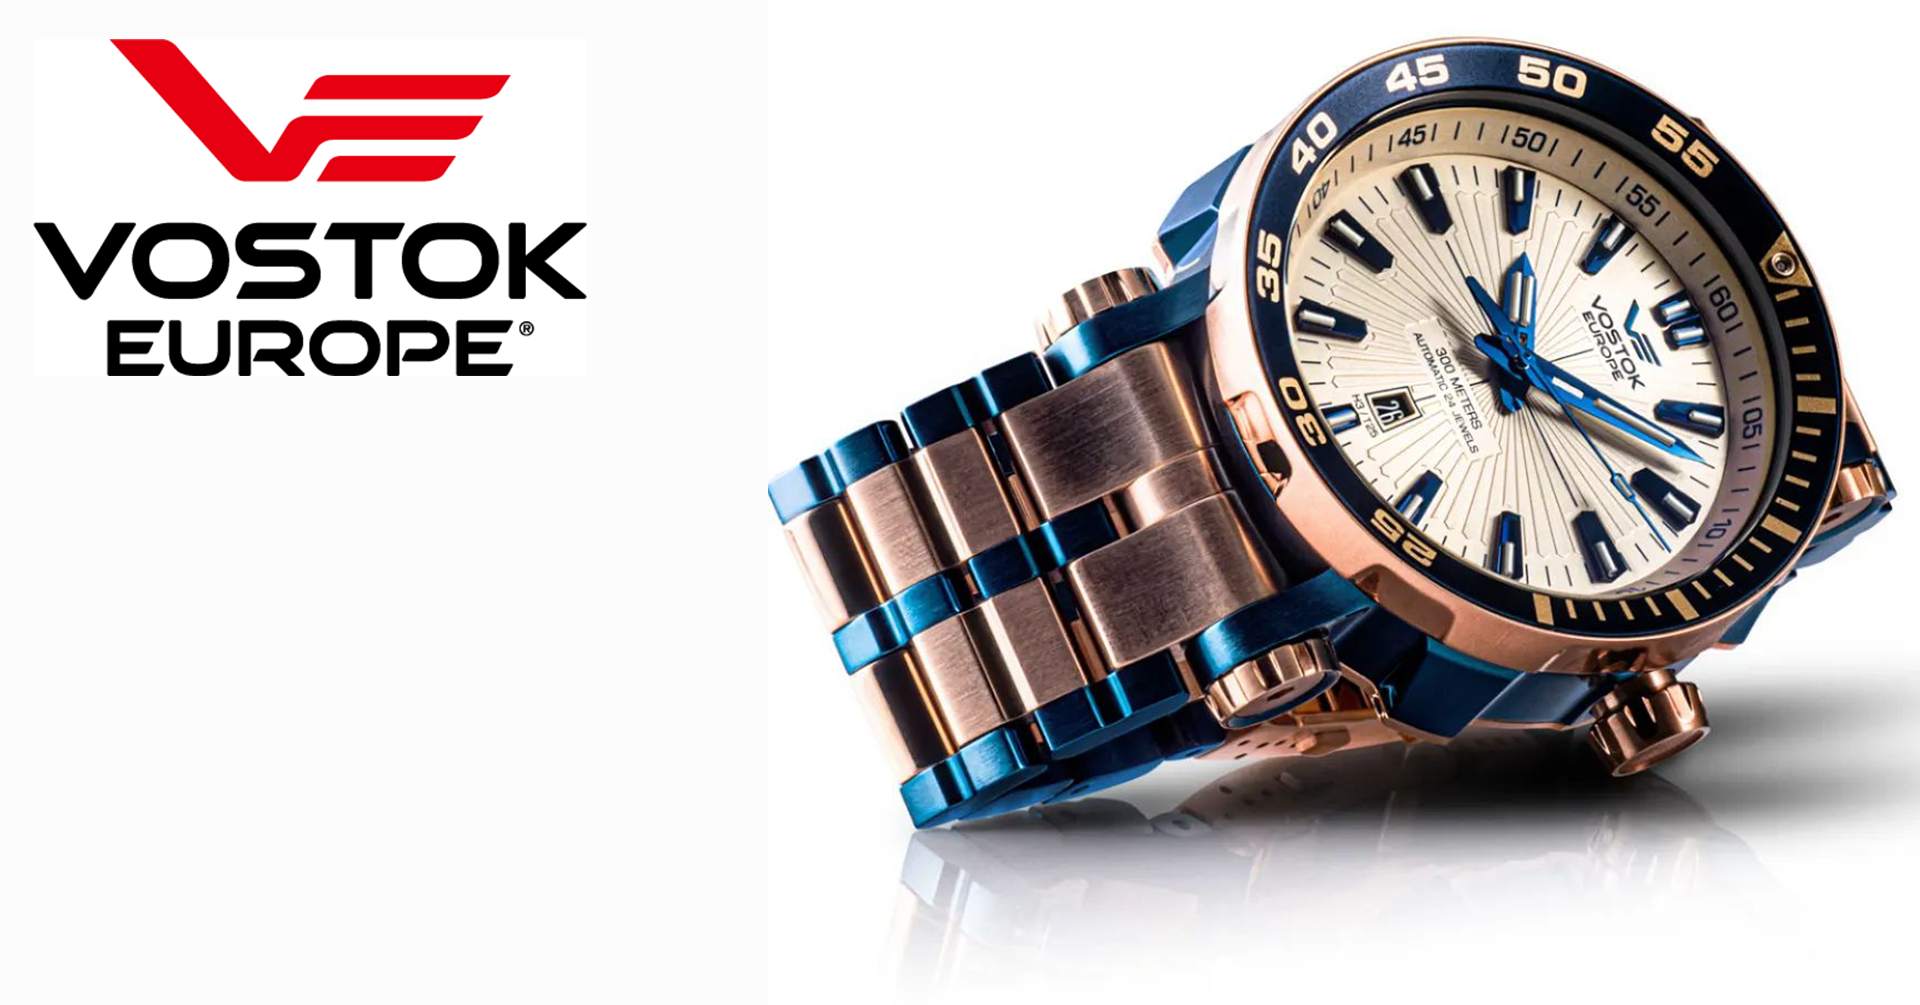 「タフネスの神髄」を楽しめる本格派腕時計 VOSTOK EUROPE 